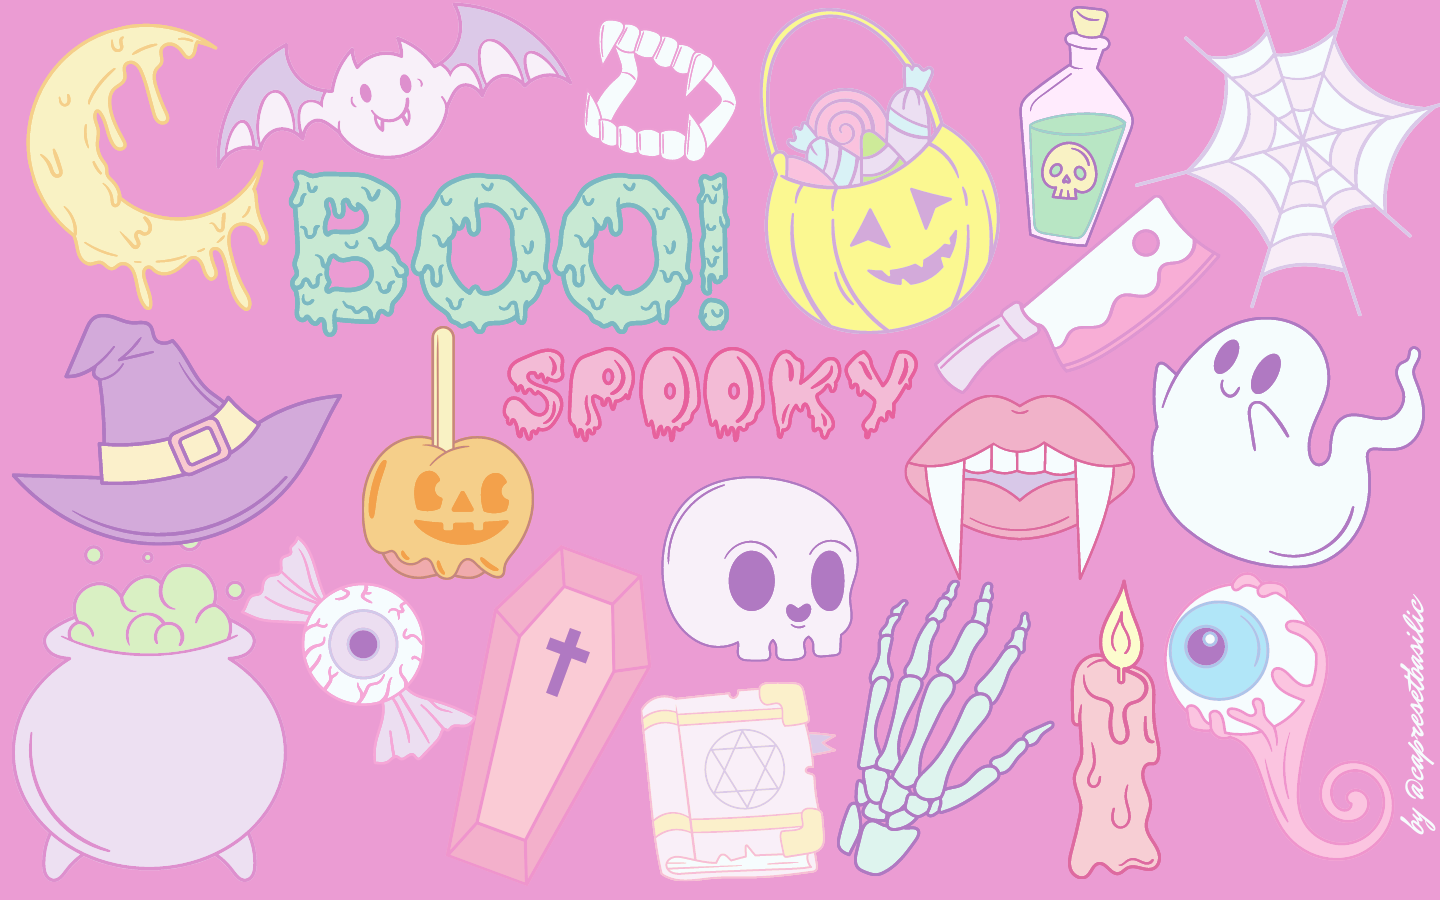 Spooky Pink Halloween desktop wallpaper Macbook. Halloween desktop wallpaper, Mac wallpaper, Cute wallpaper